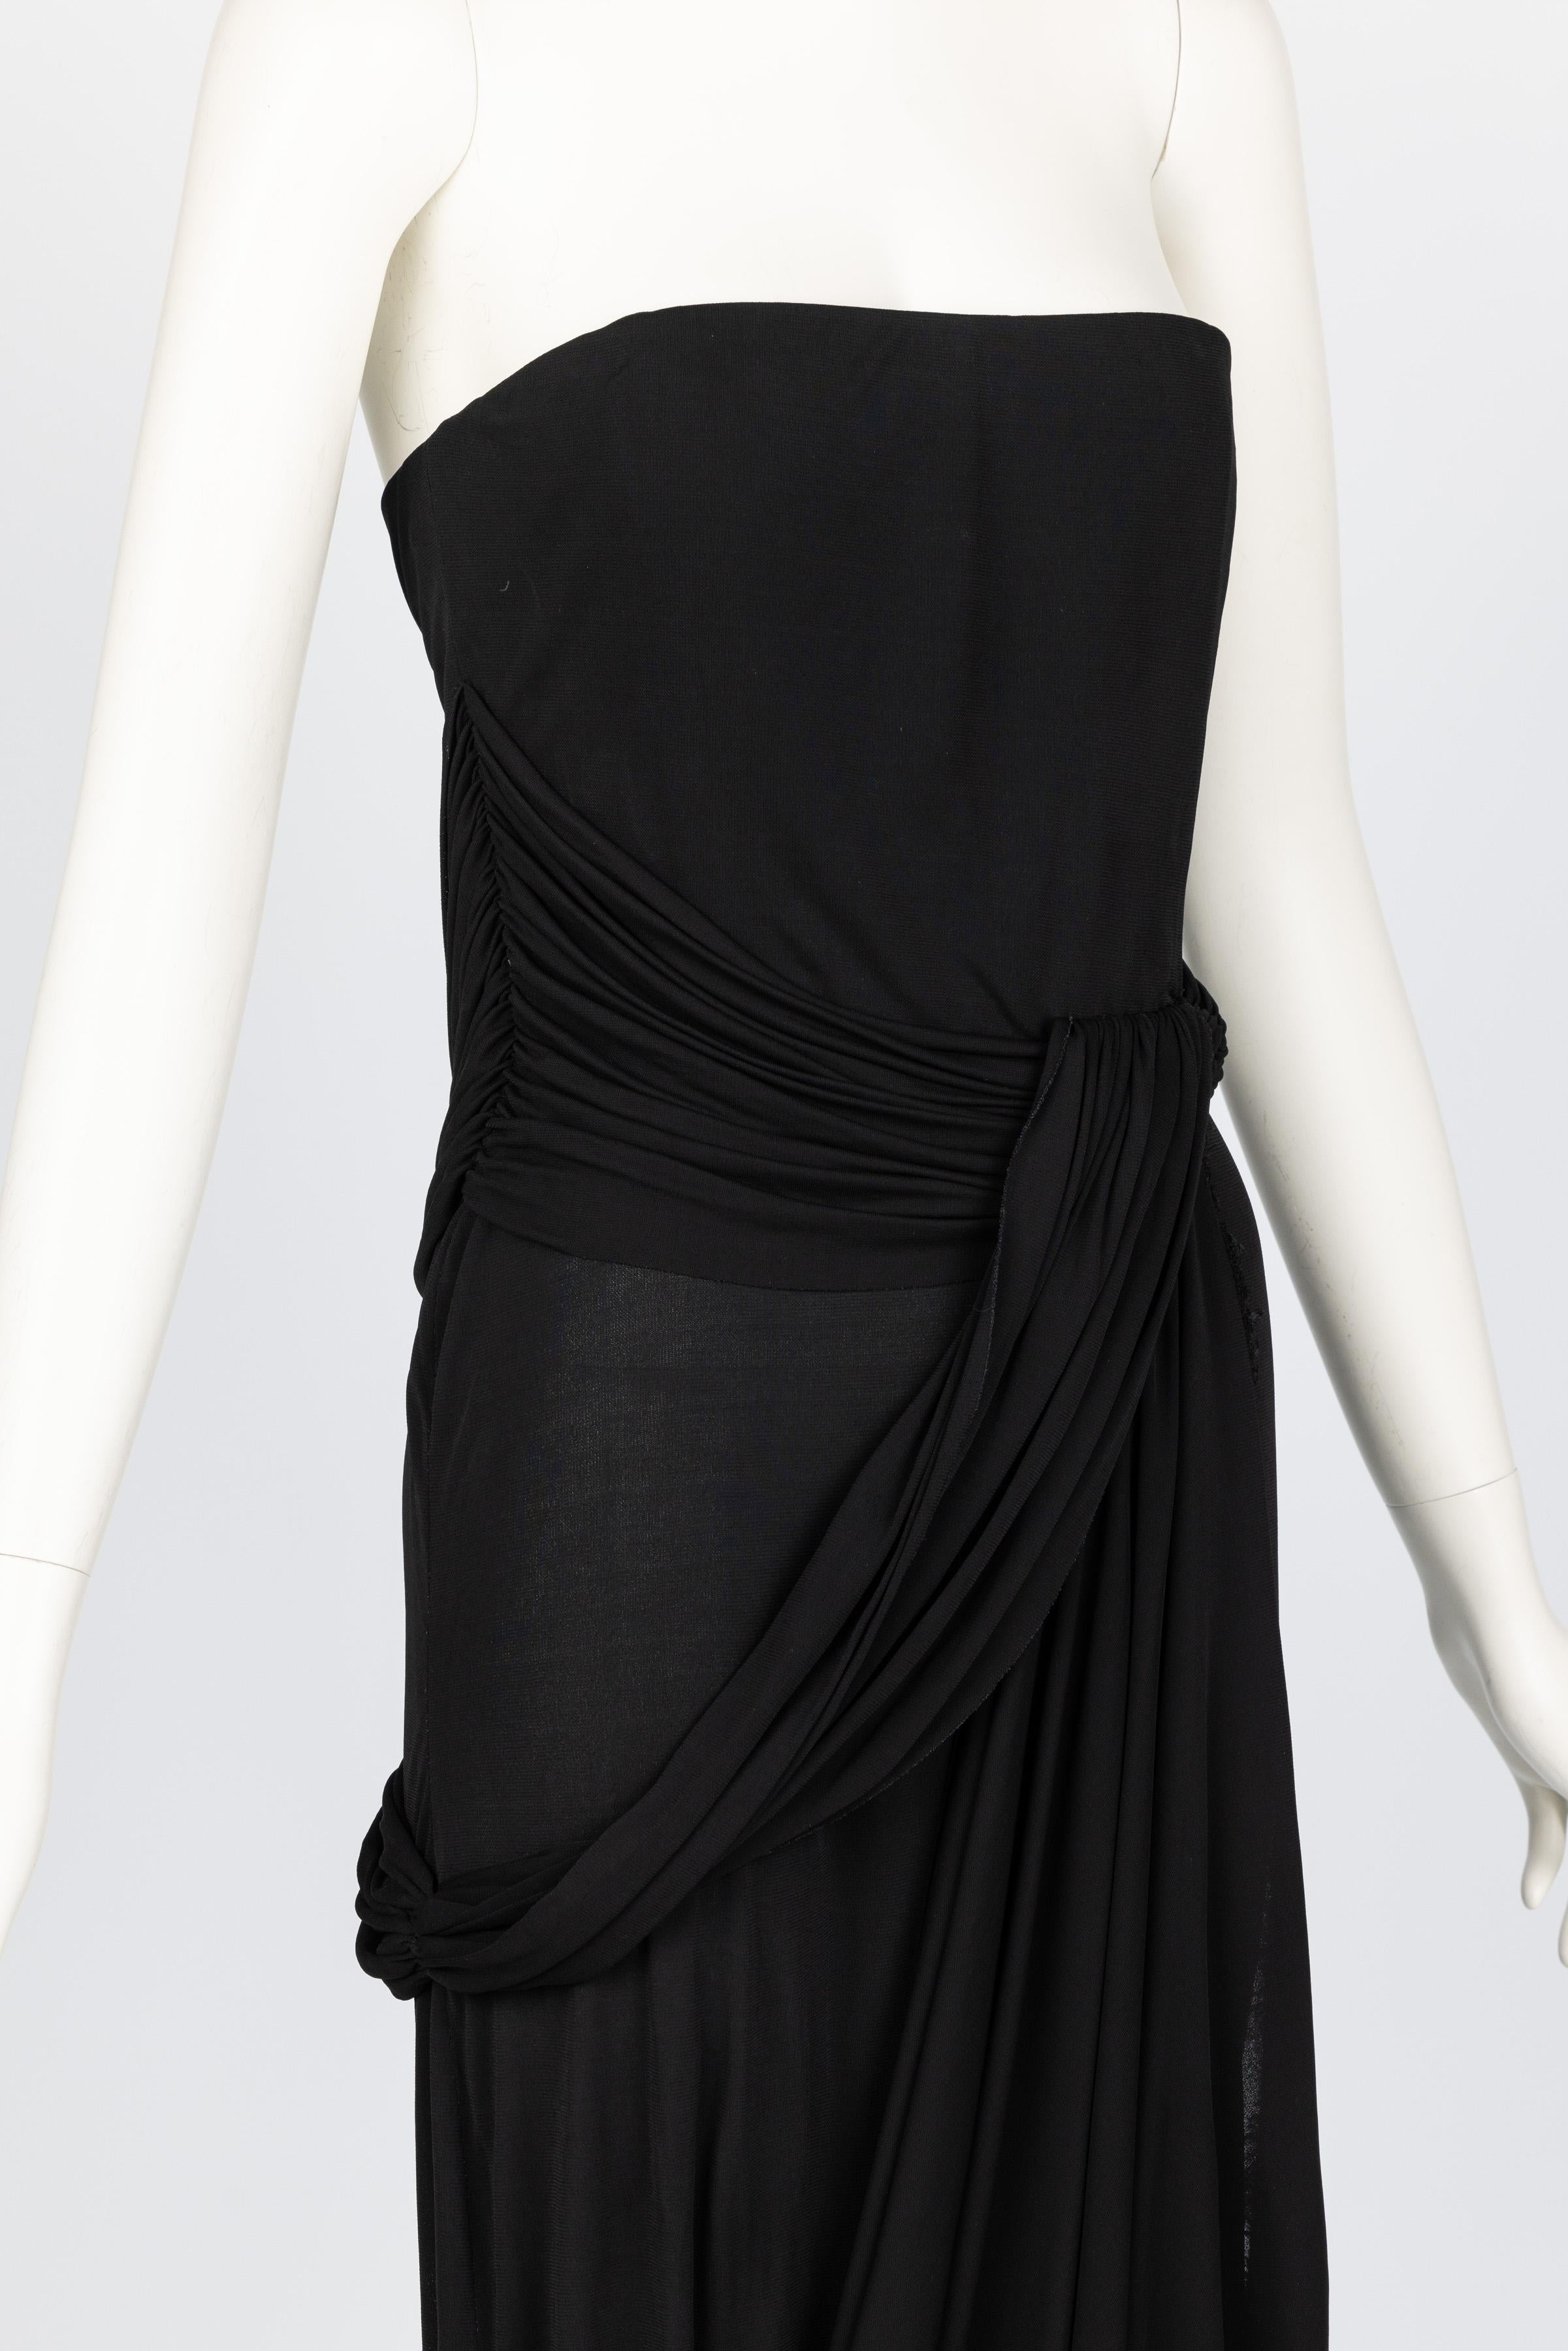 Bill Blass 1970s Black Strapless Draped Maxi Dress For Sale 4